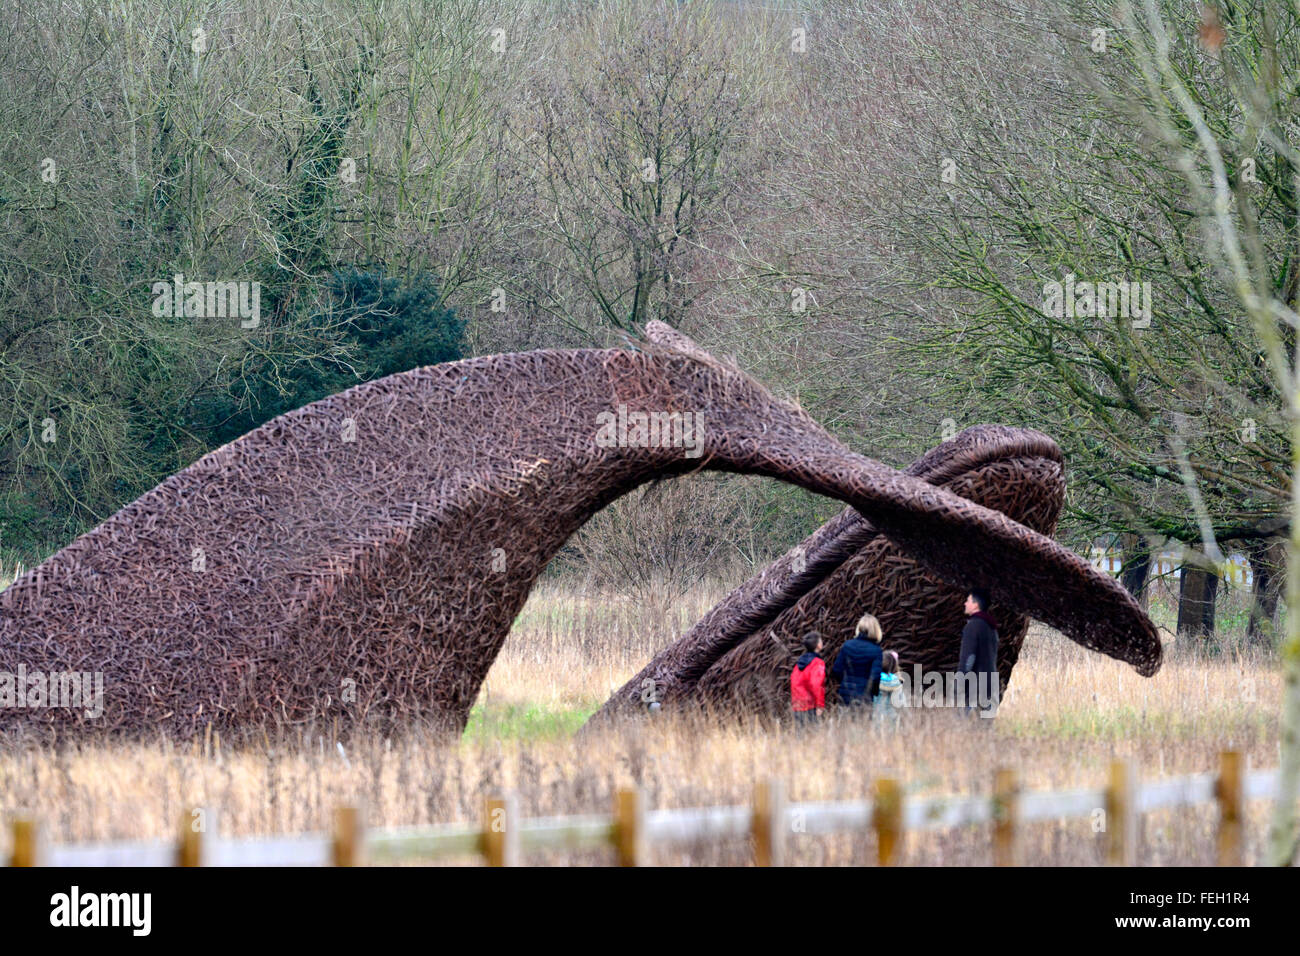 Bristol, Royaume-Uni. 7 Février, 2016. La baleine en osier fabriqués à partir de willow cultivés sur la sumerset niveaux. la baleine dans maintenant vu dans les champs à côté de l'entrée en Portway Bristol.Personnes vu prendre un gros plan sur le terrain. ROBERT TIMONEY/AlamyLiveNews Banque D'Images